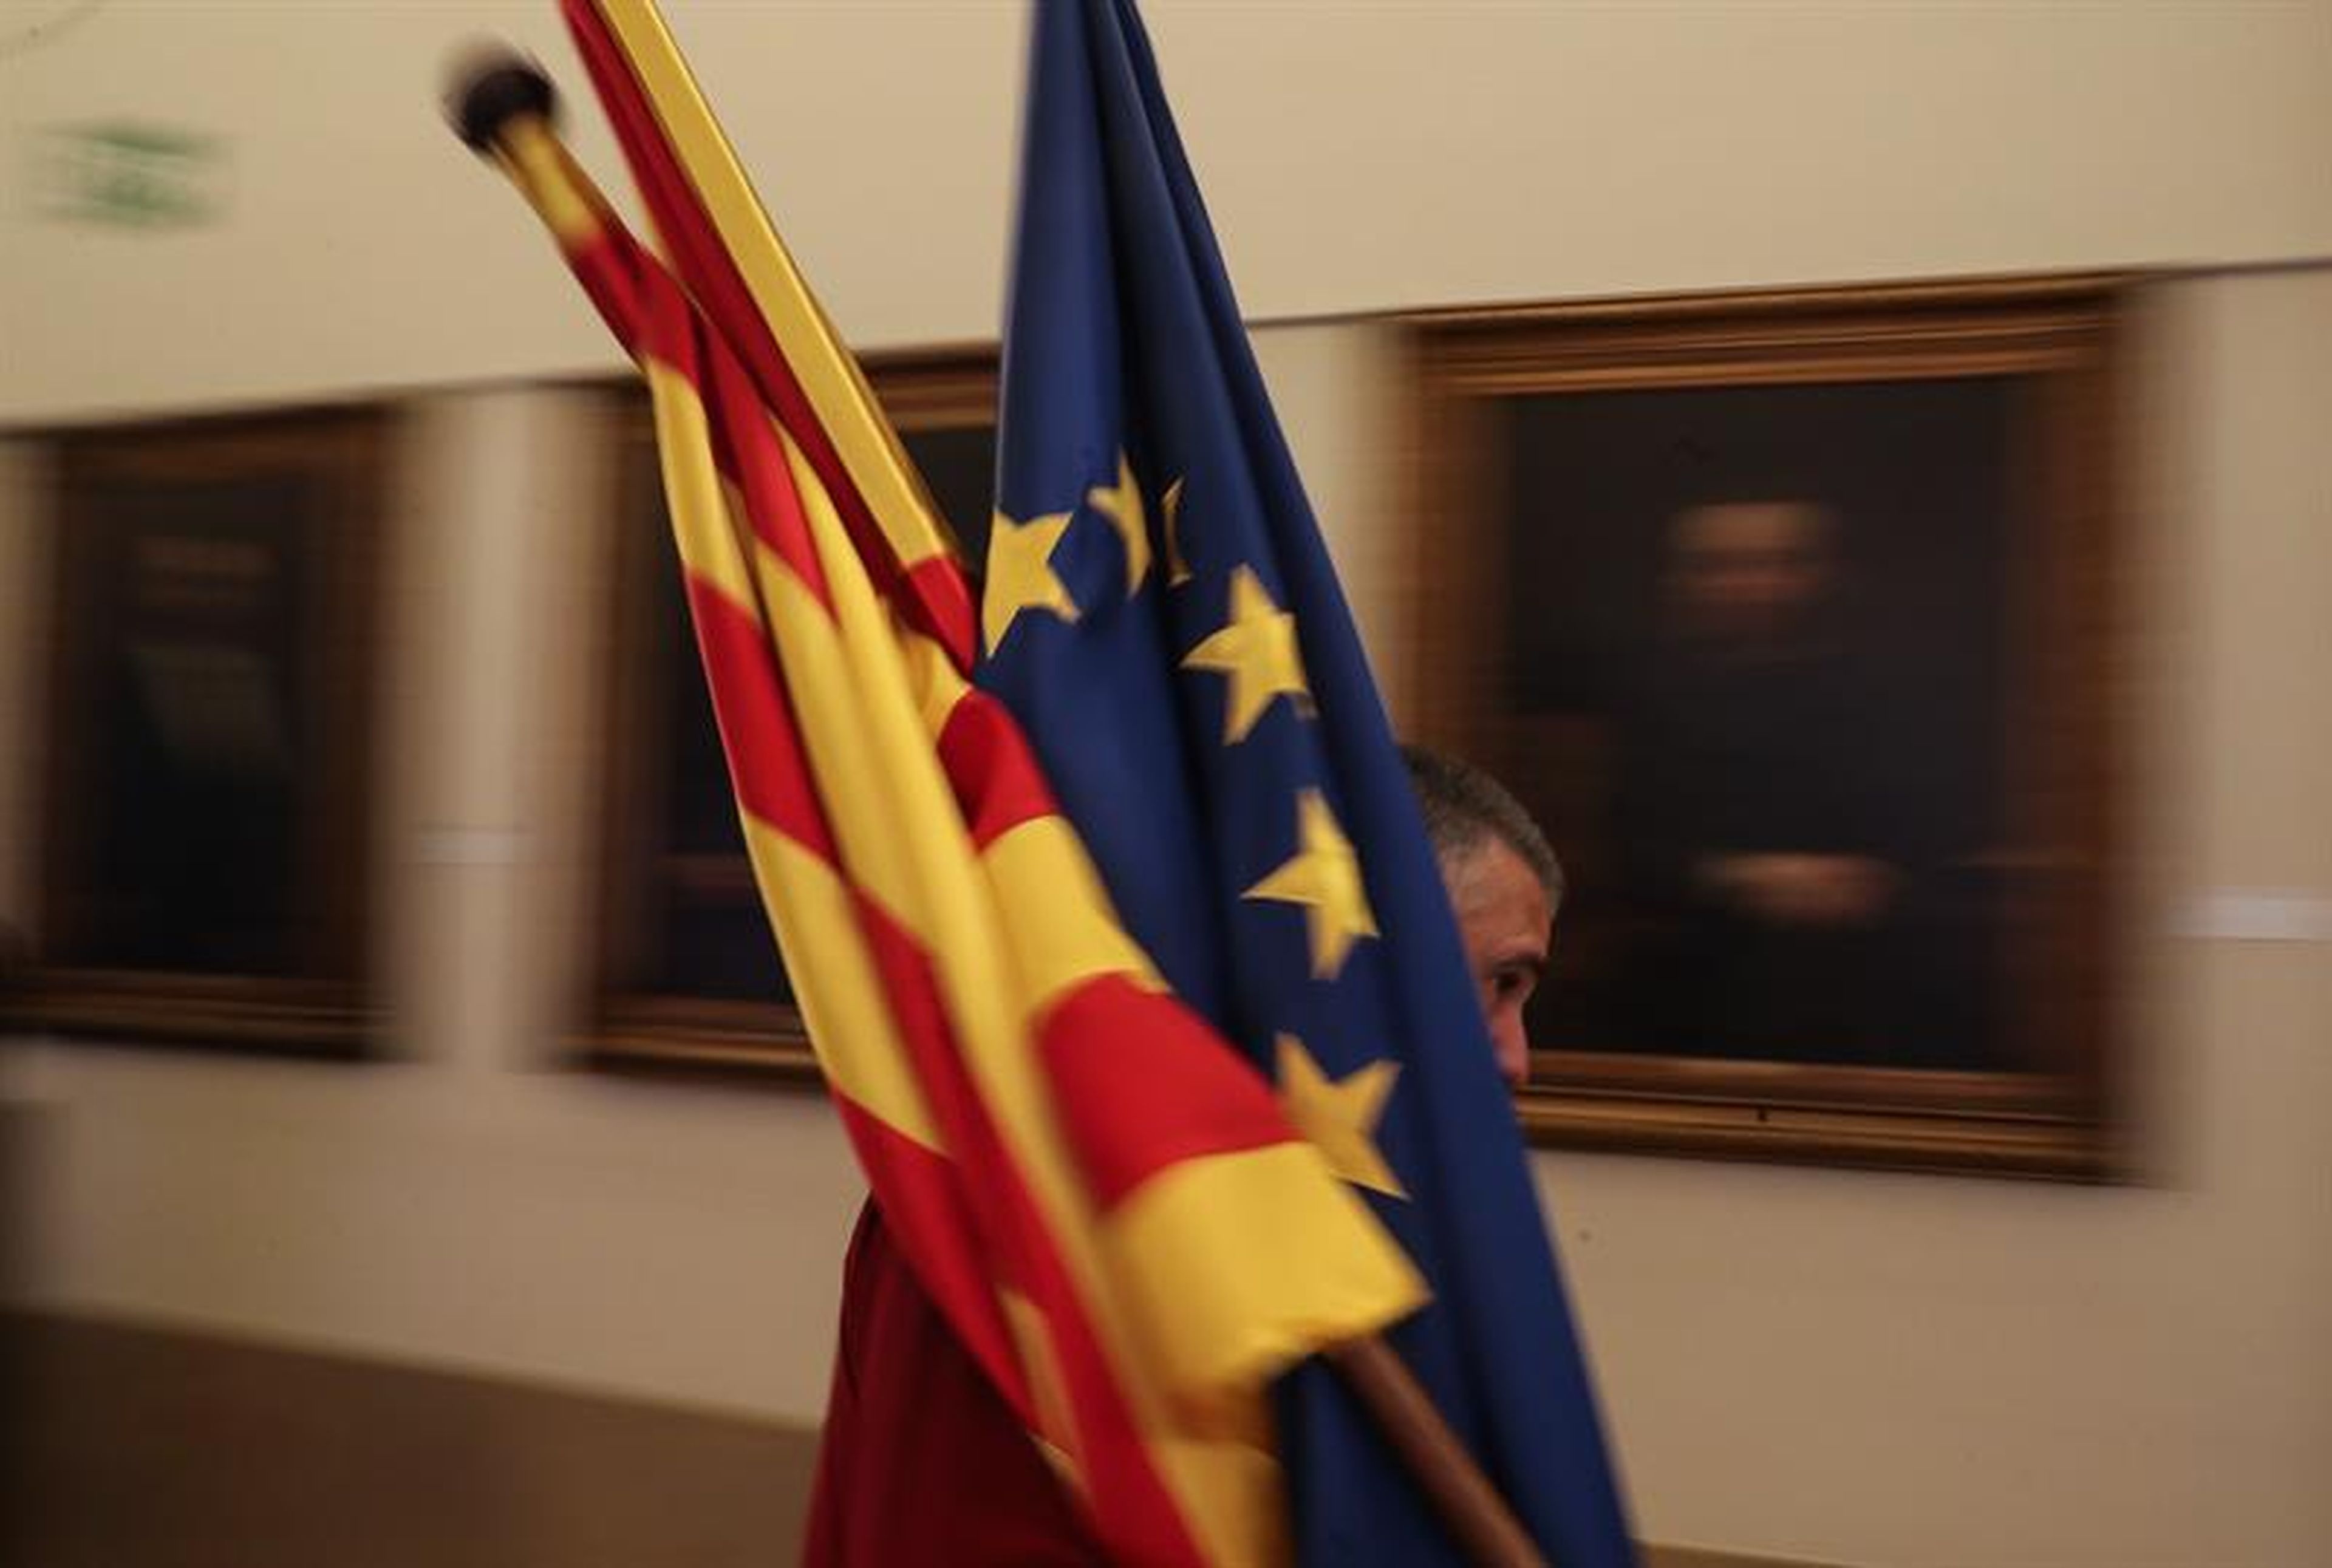 Banderas Europa, España y Cataluña